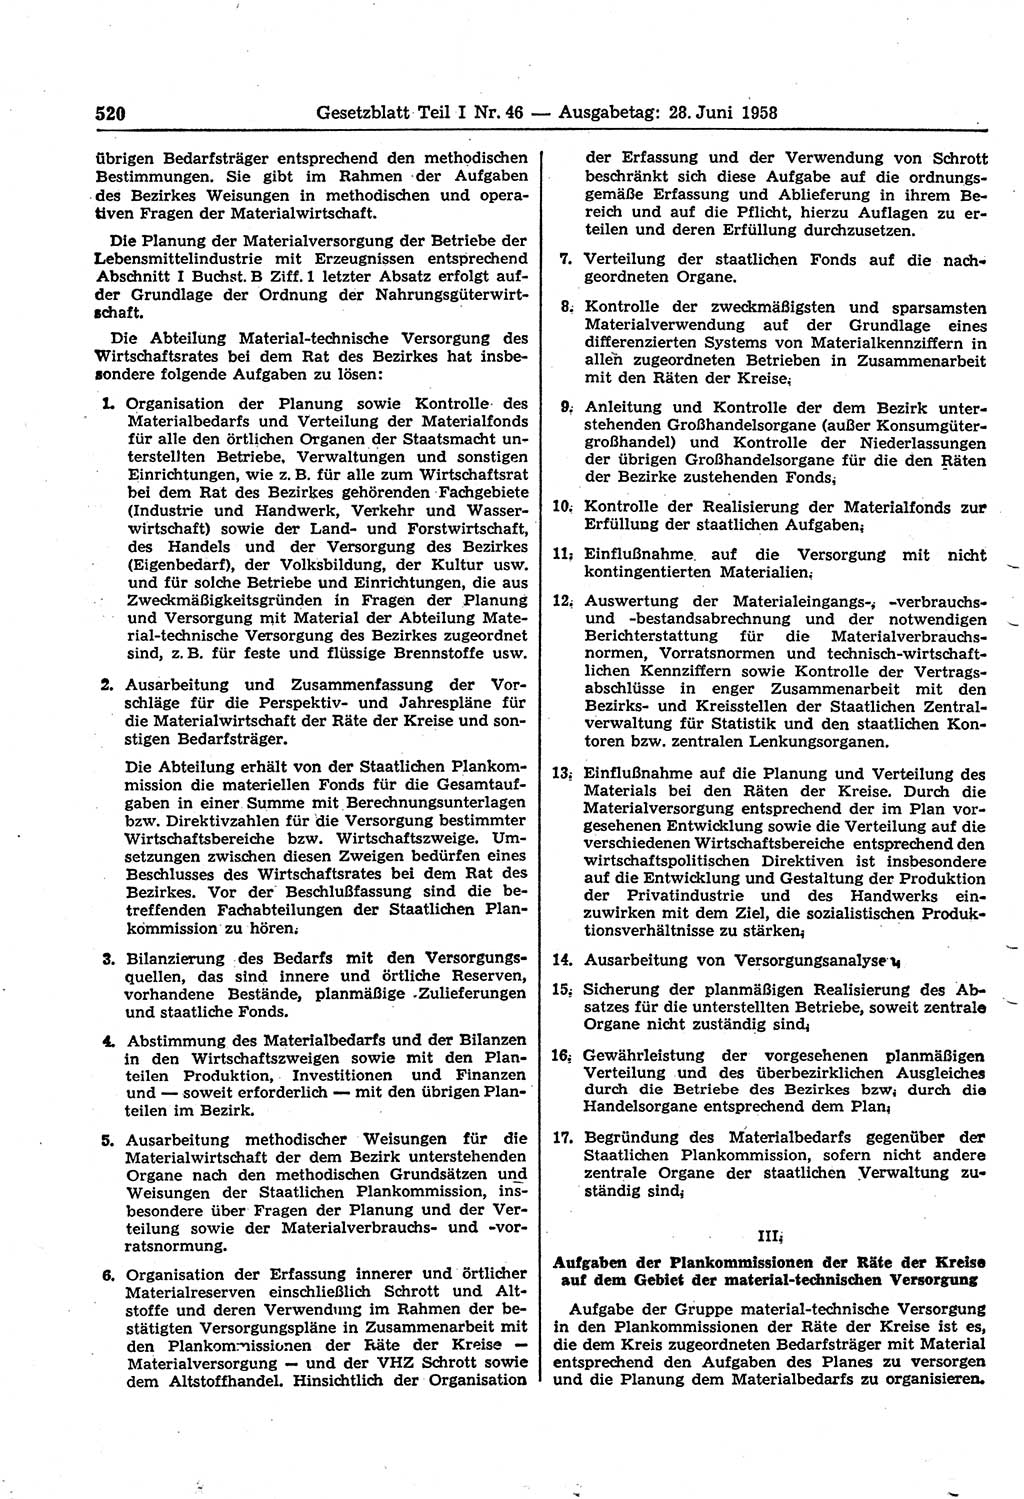 Gesetzblatt (GBl.) der Deutschen Demokratischen Republik (DDR) Teil Ⅰ 1958, Seite 520 (GBl. DDR Ⅰ 1958, S. 520)